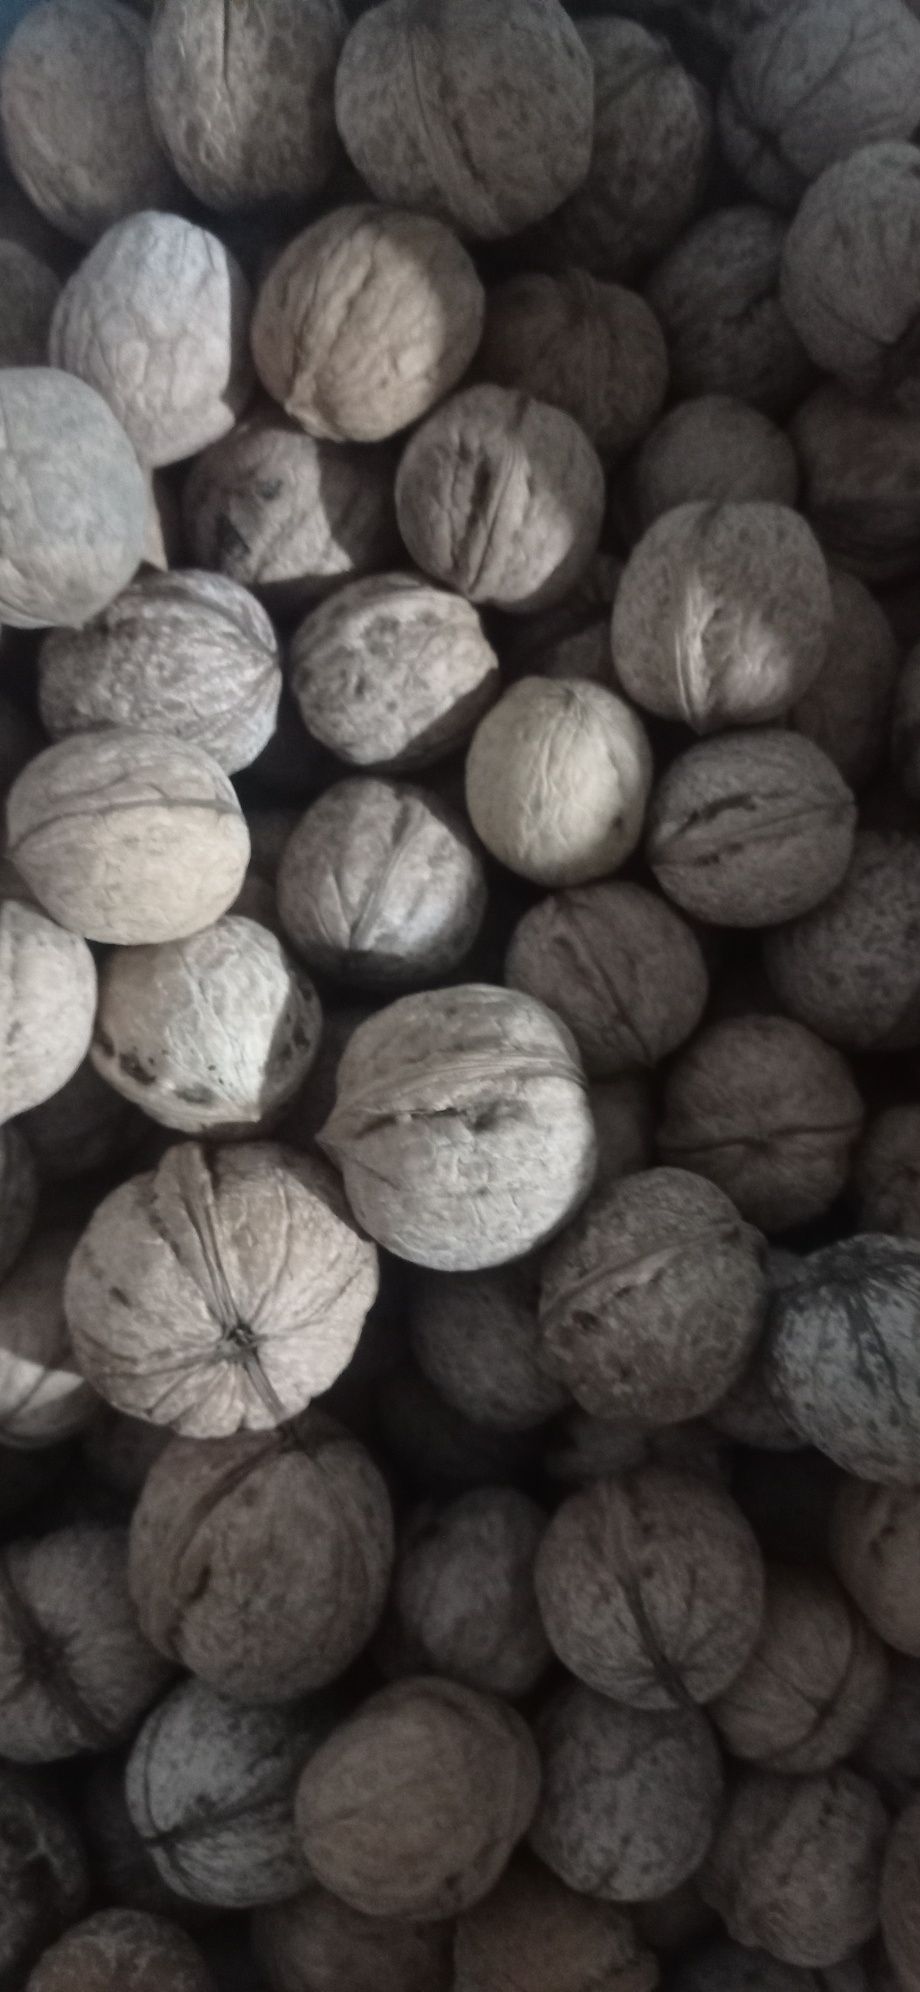 продаем вкусные, свежие орехи кг. по 20 000 сум.